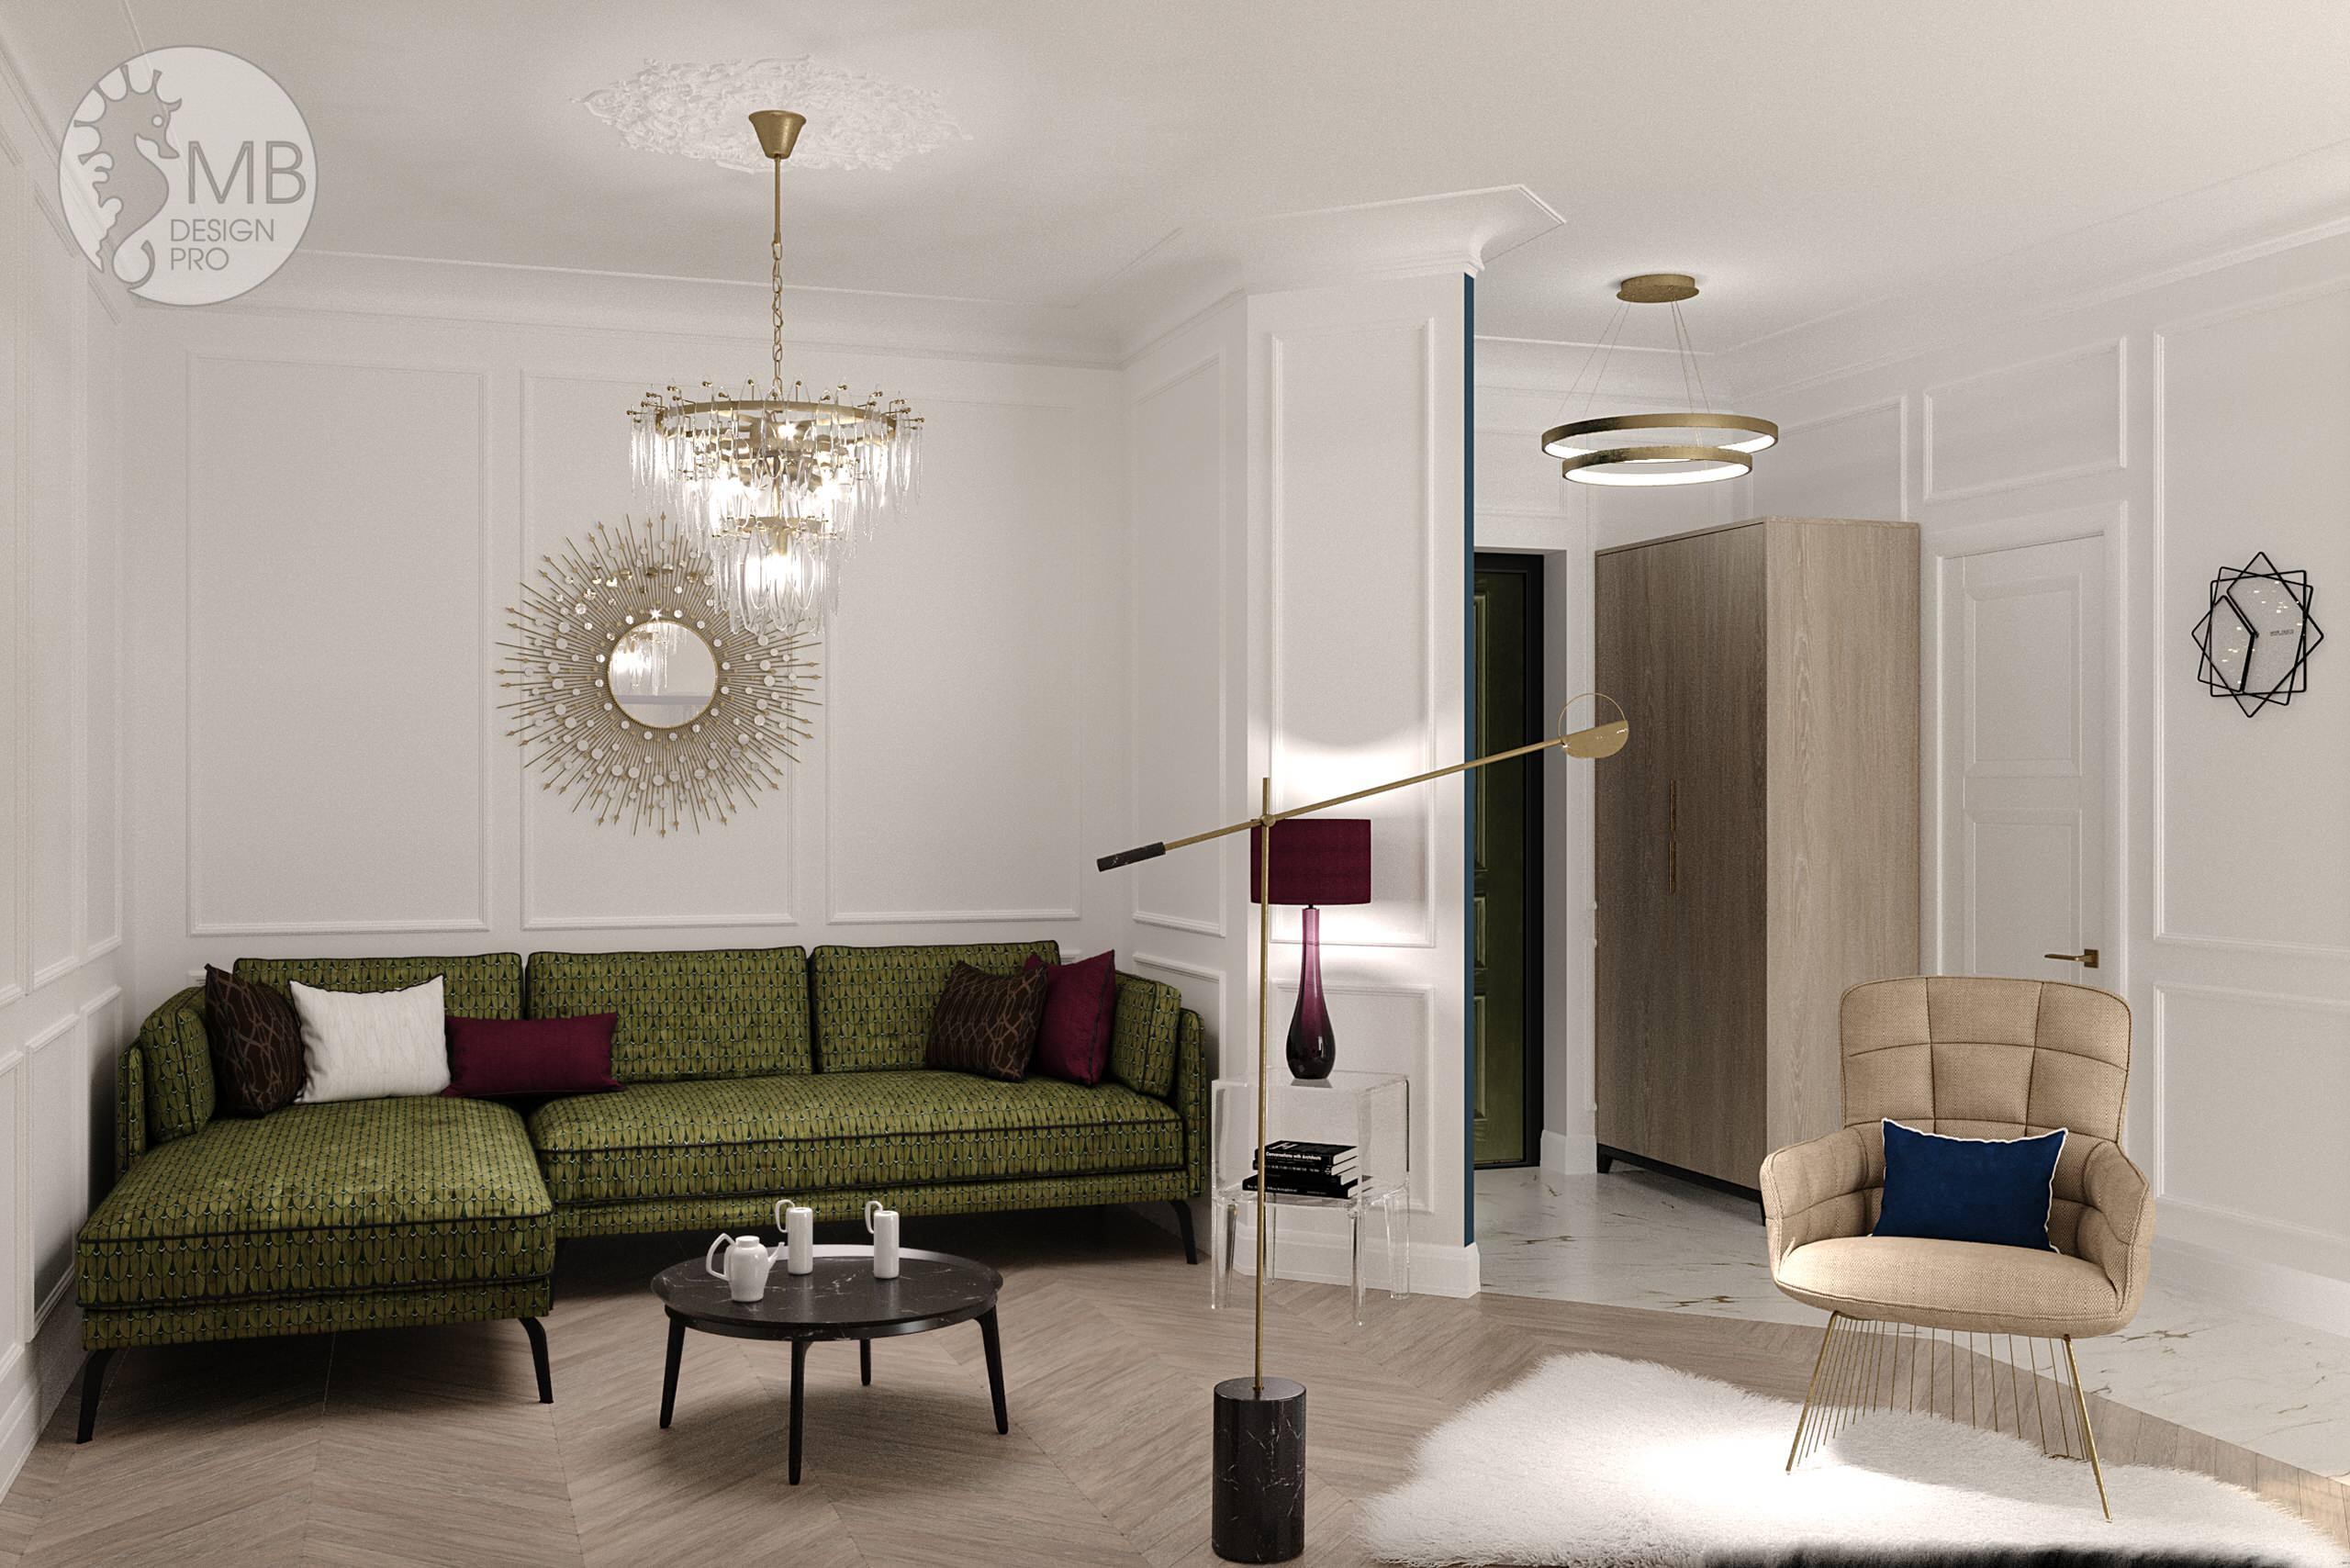 Интерьер гостиной cветовыми линиями и подсветкой светодиодной в стиле фьюжн